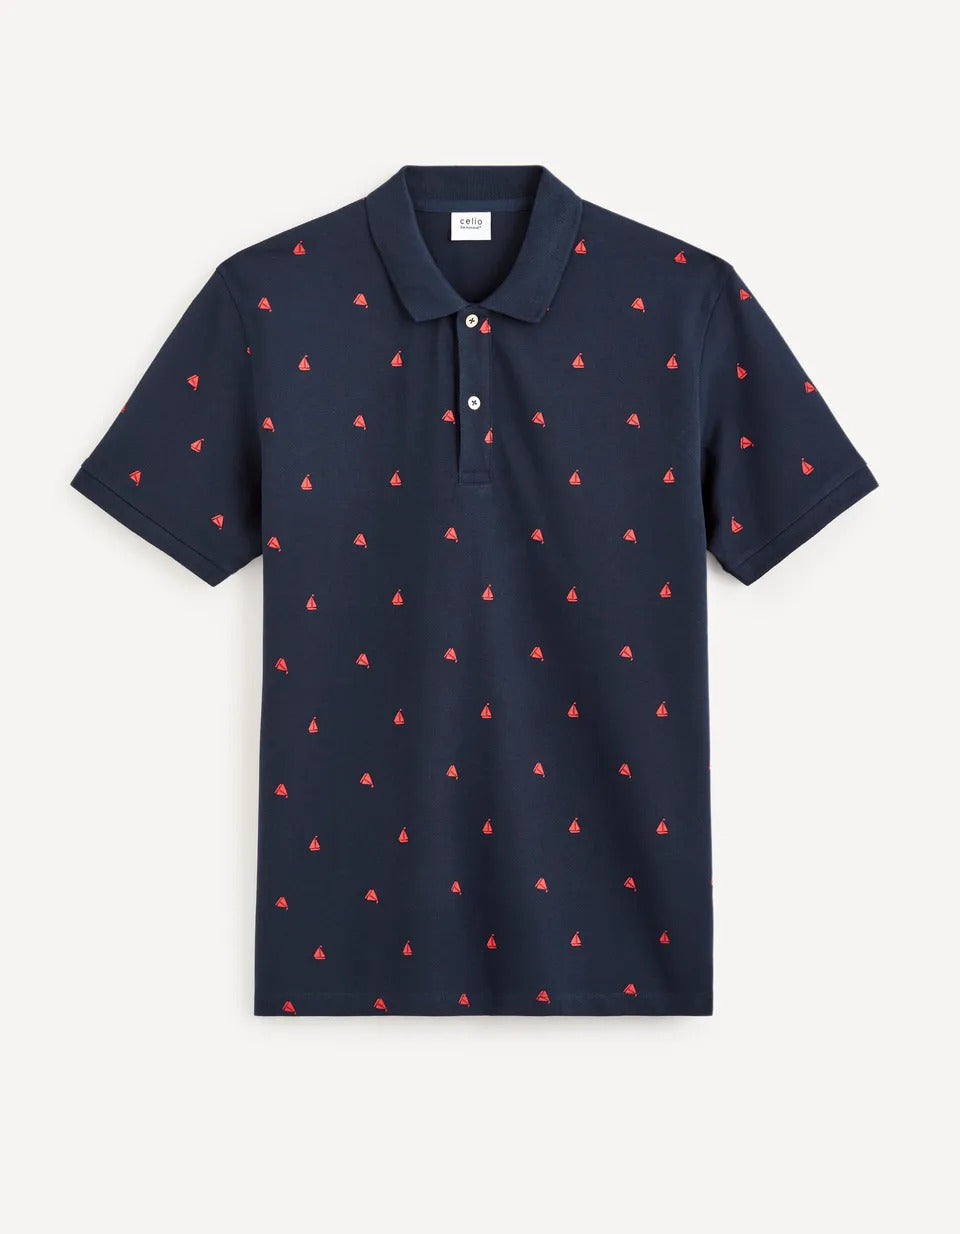 100% Cotton Piqué Polo Shirt - Navy - 03